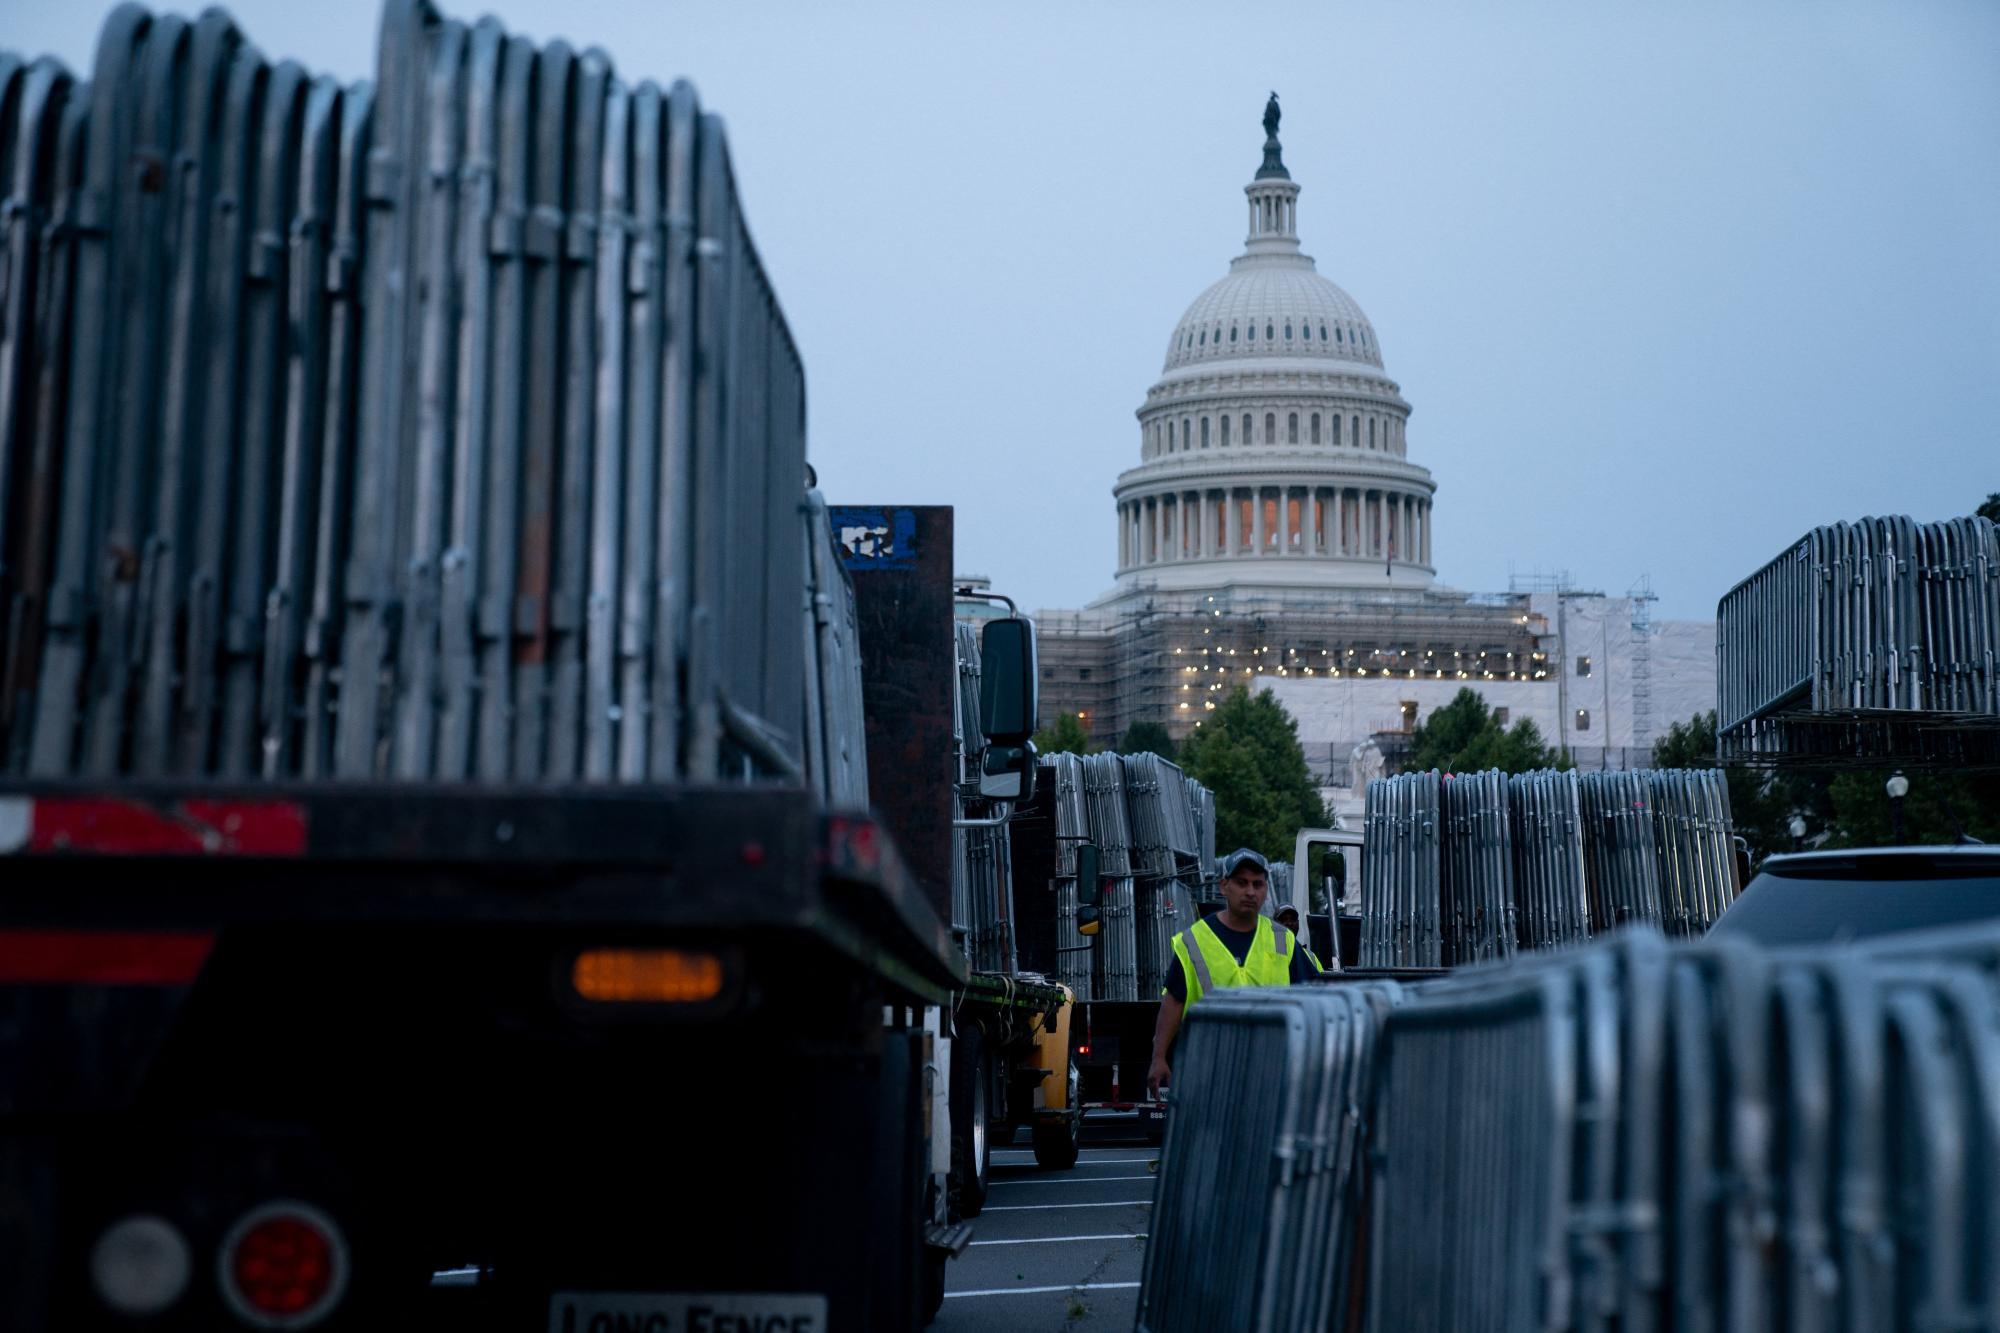 Arbeiter errichteten im Vorfeld der Anklage gegen den ehemaligen US-Präsidenten Donald Trump Sicherheitsbarrikaden vor dem US-Kapit.ol in Washington, DC.